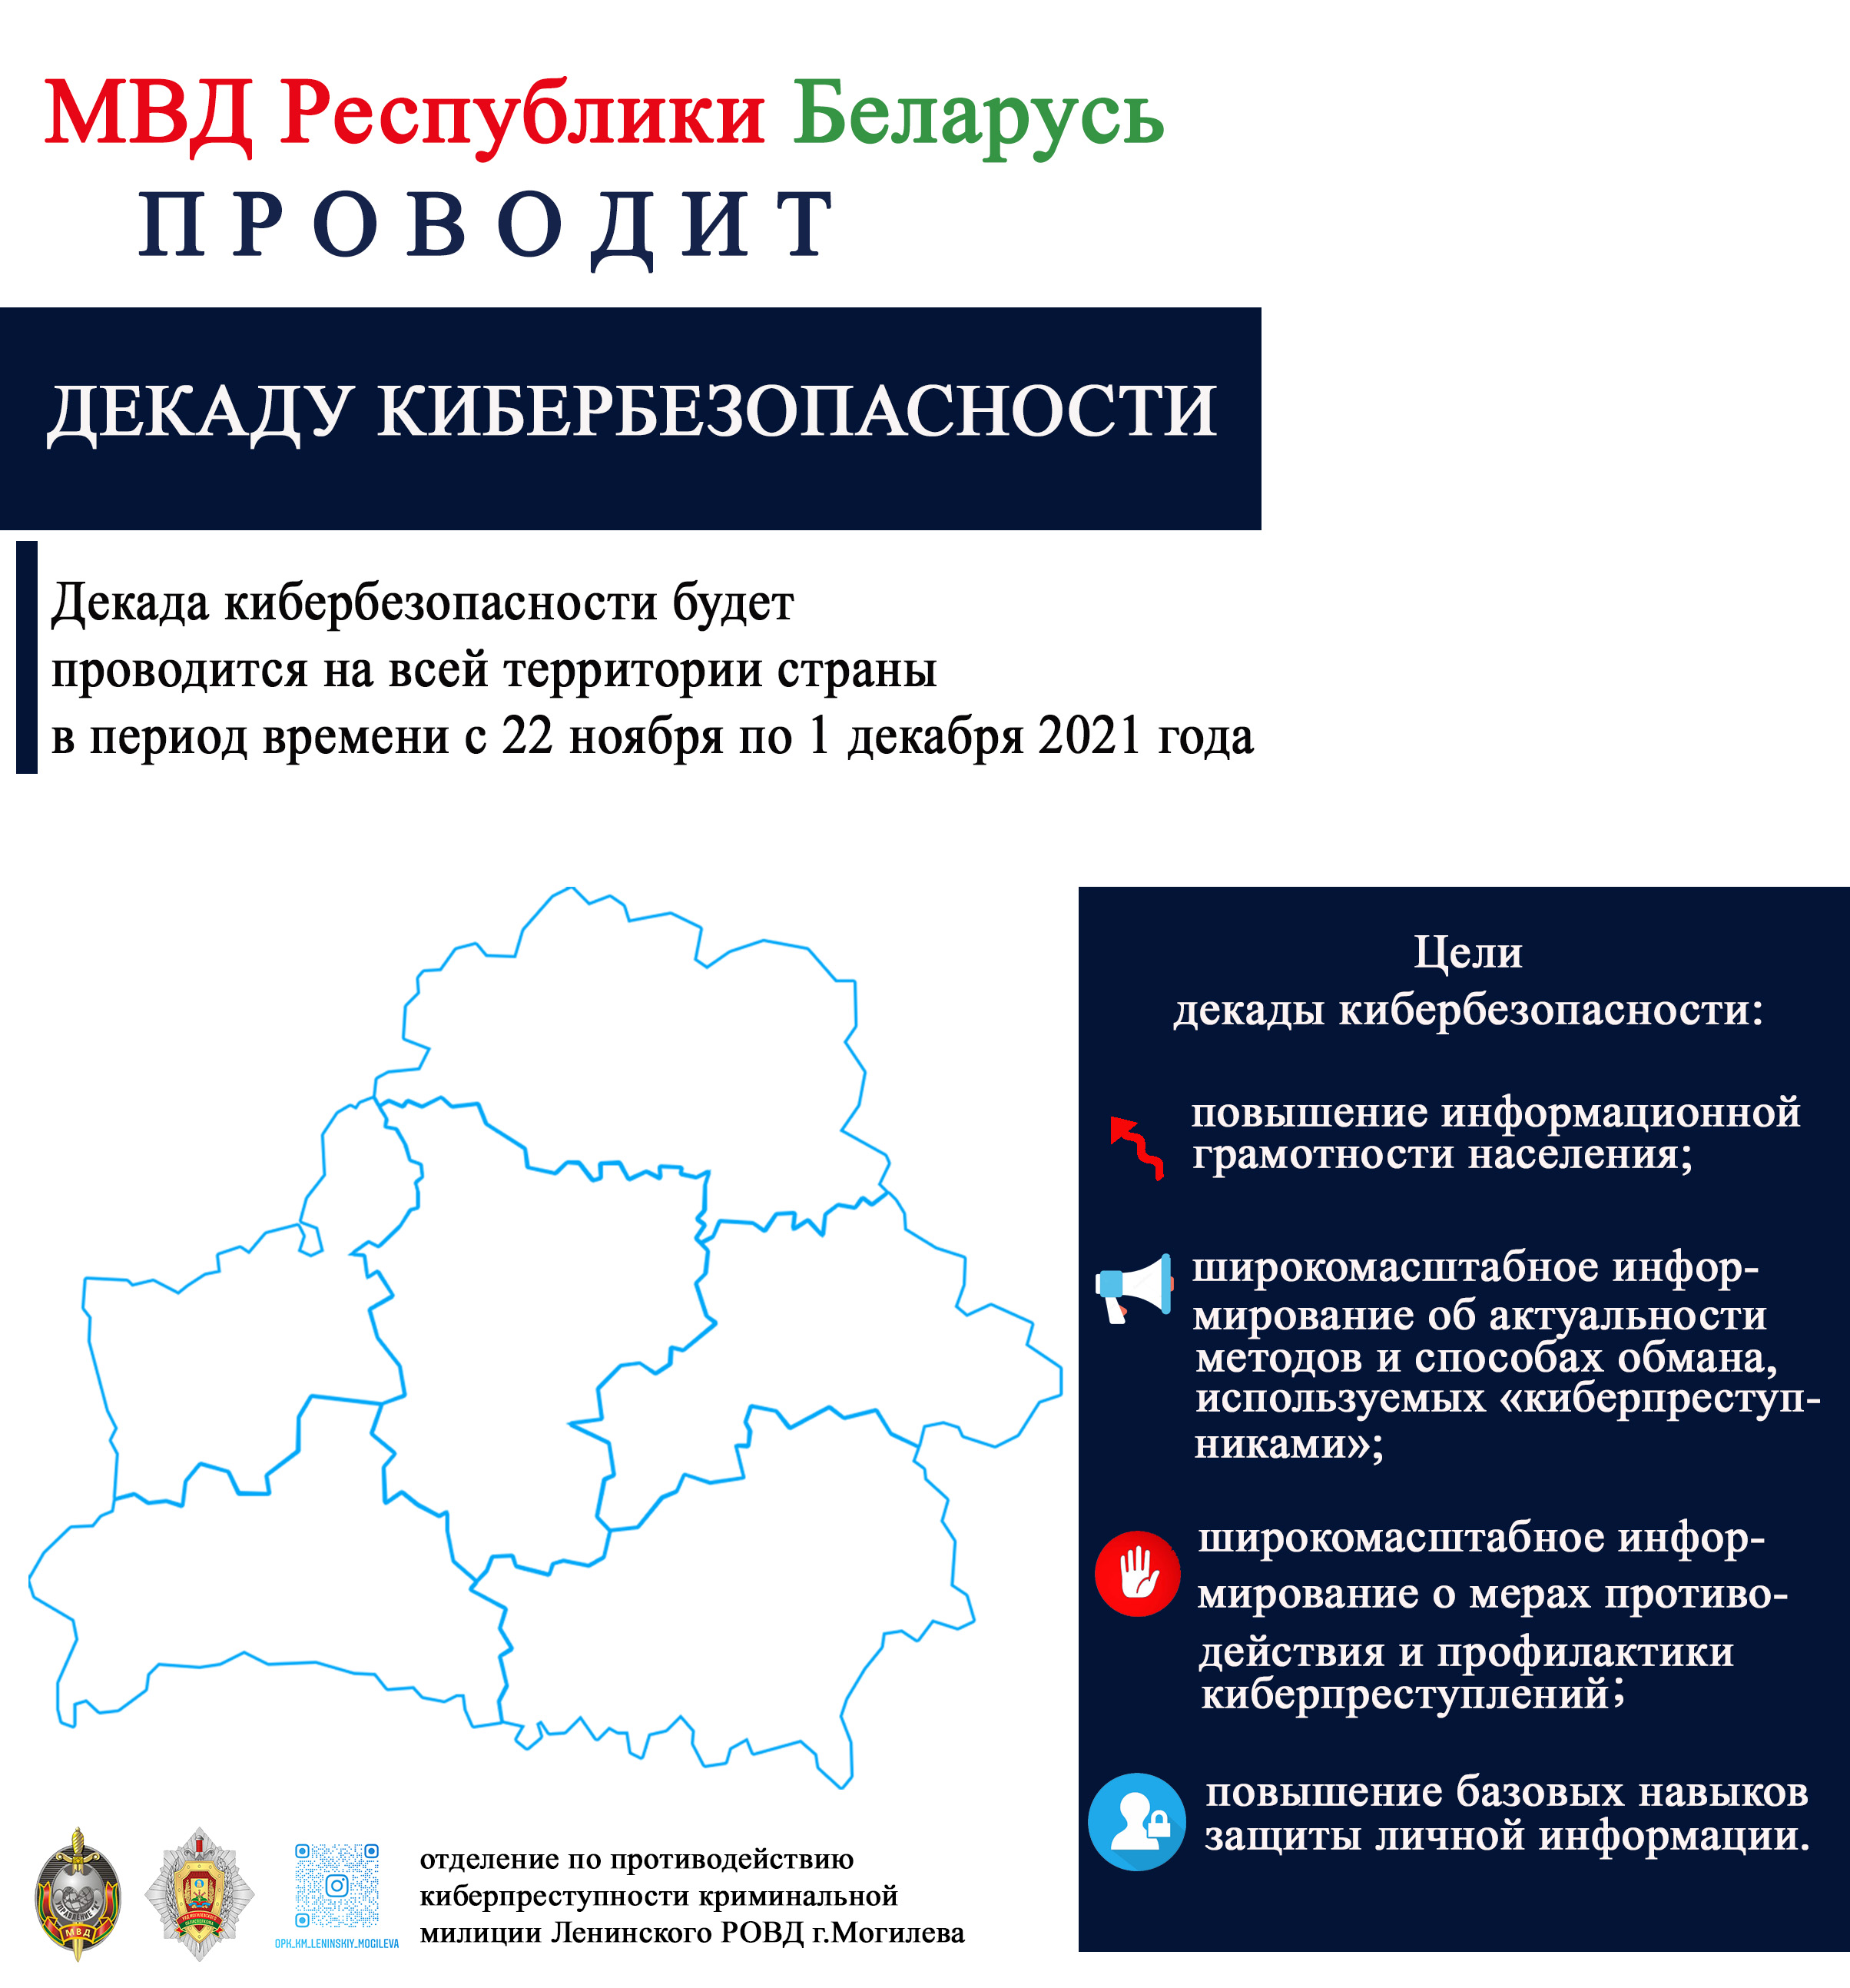 МВД Республики Беларусь проводит ДЕКАДУ КИБЕРБЕЗОПАСНОСТИ